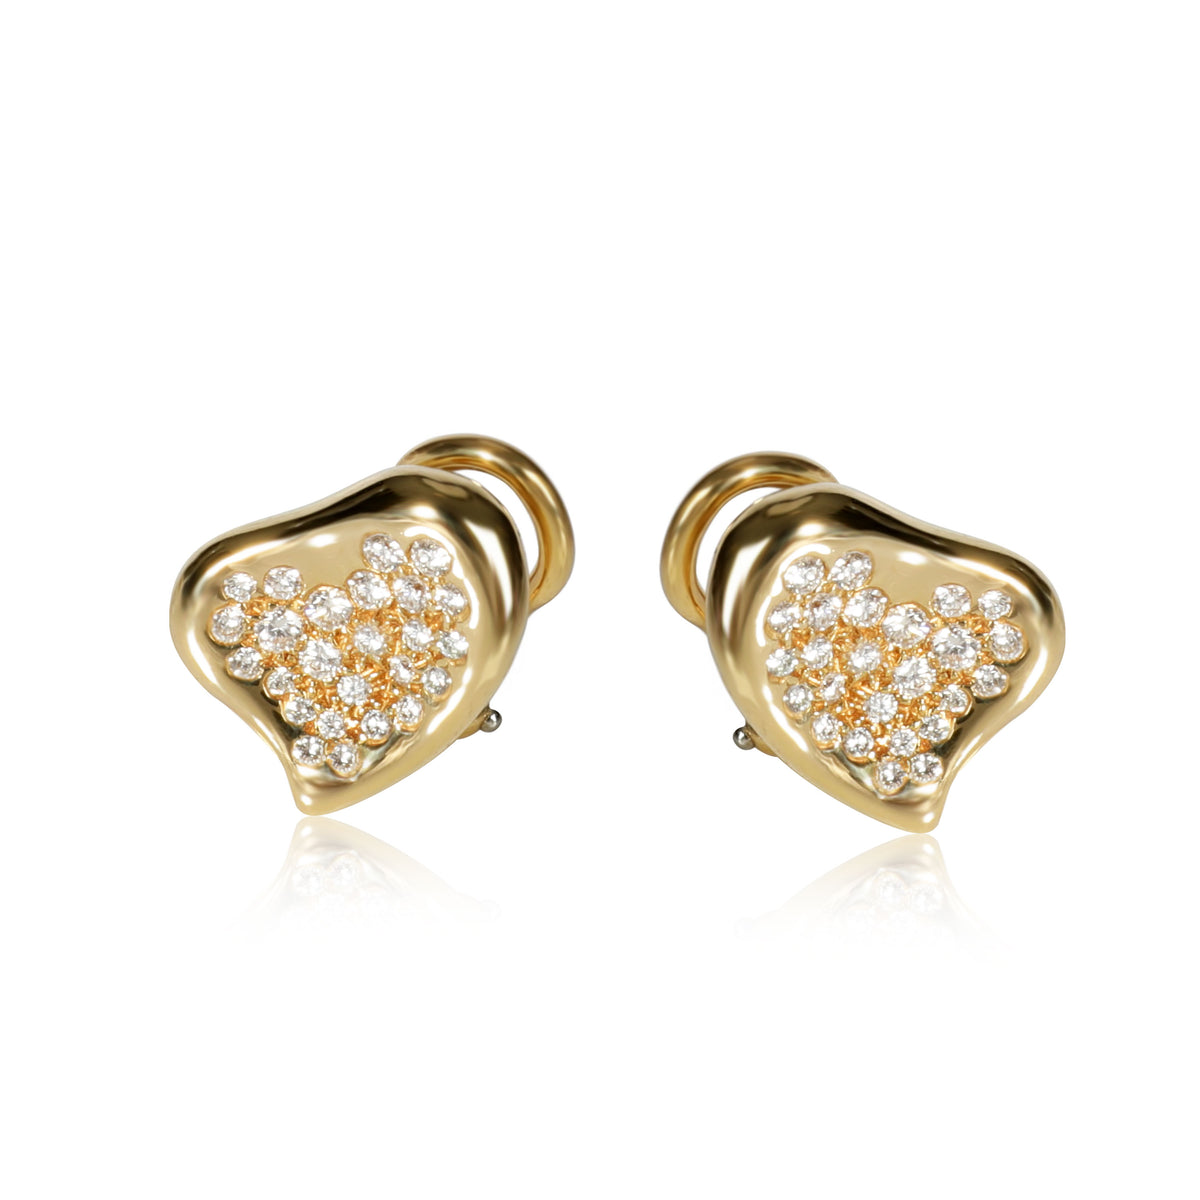 Tiffany & Co. Elsa Peretti Full Heart Diamond Earrings in 18K Gold 0.50 CTW